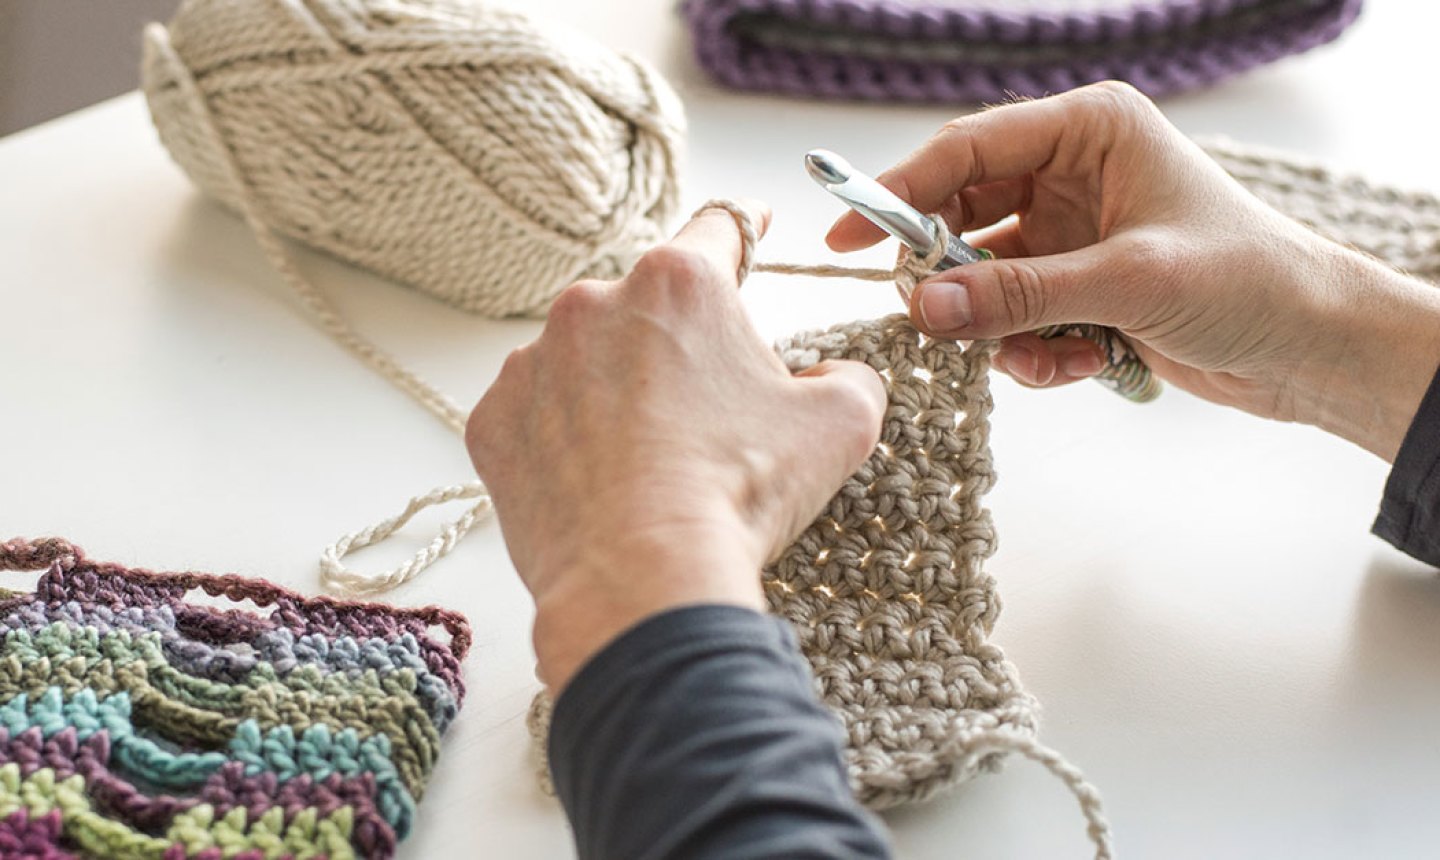 Let's Make Crochet for Beginners November 2020 Read Crochet Patterns